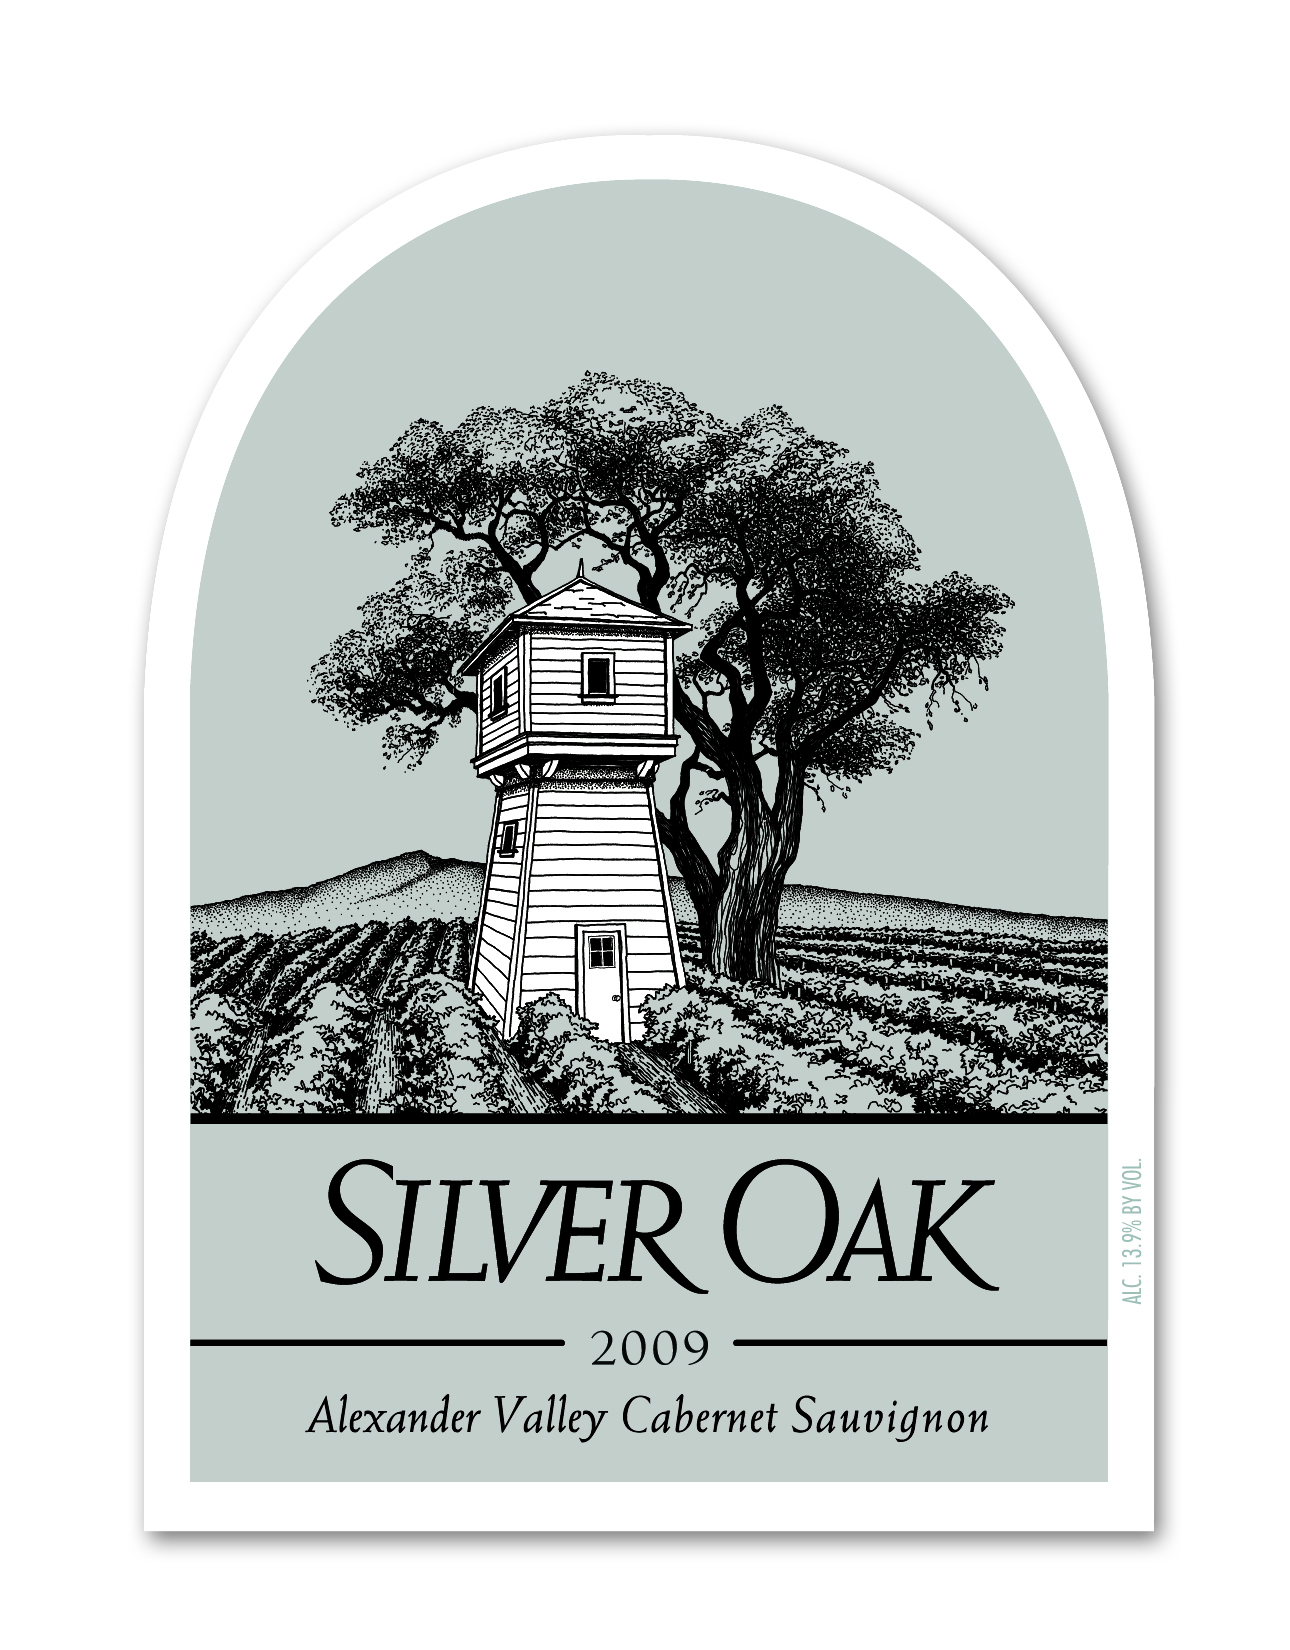 2012 Silver Oak Cabernet Sauvignon Alexander Valley - click image for full description